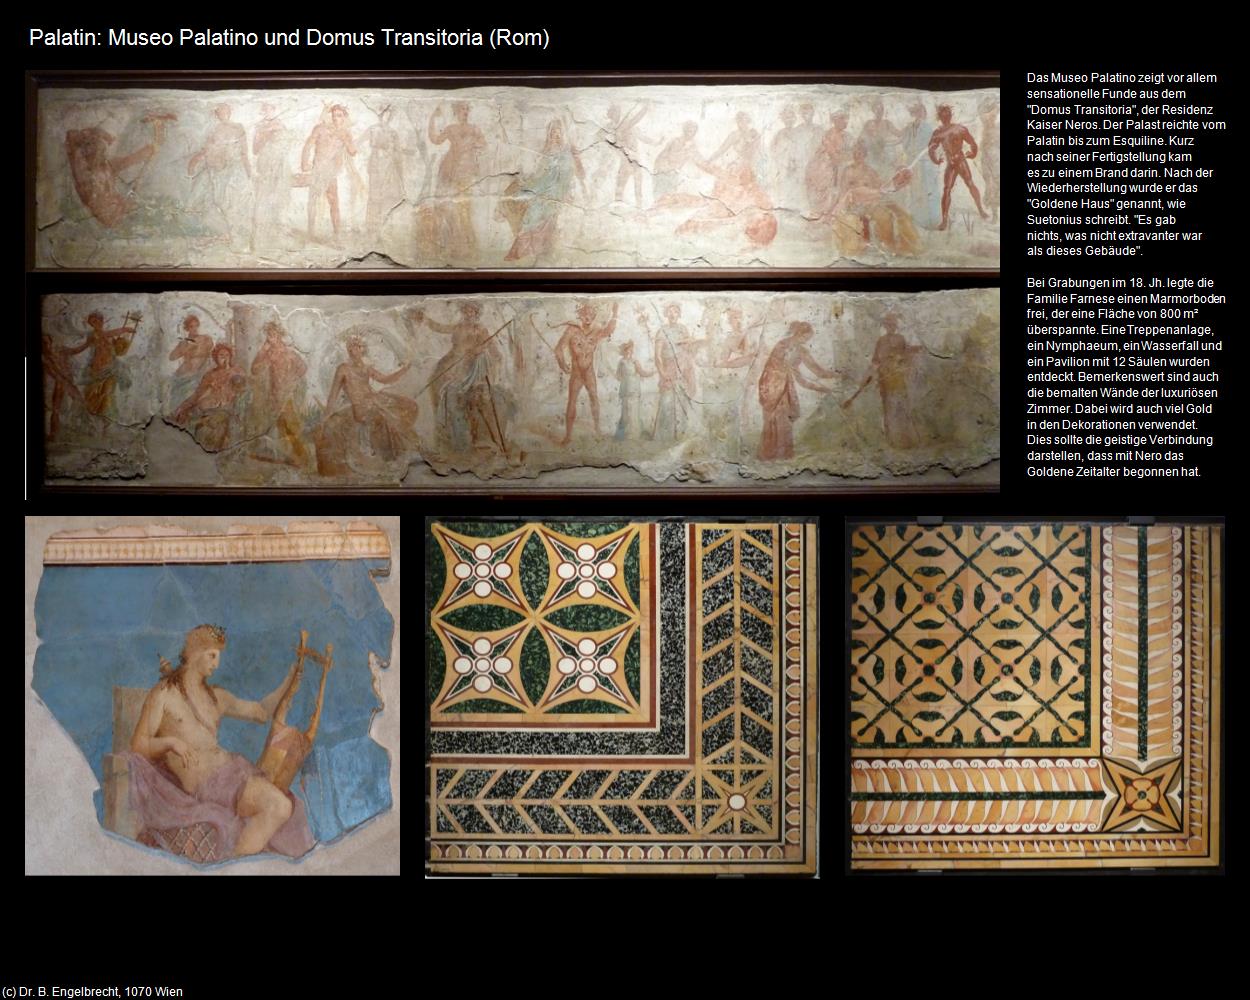 Palatin: Domus Transitoria (Rom-04-Forum Romanum und Umgebung) in ROM